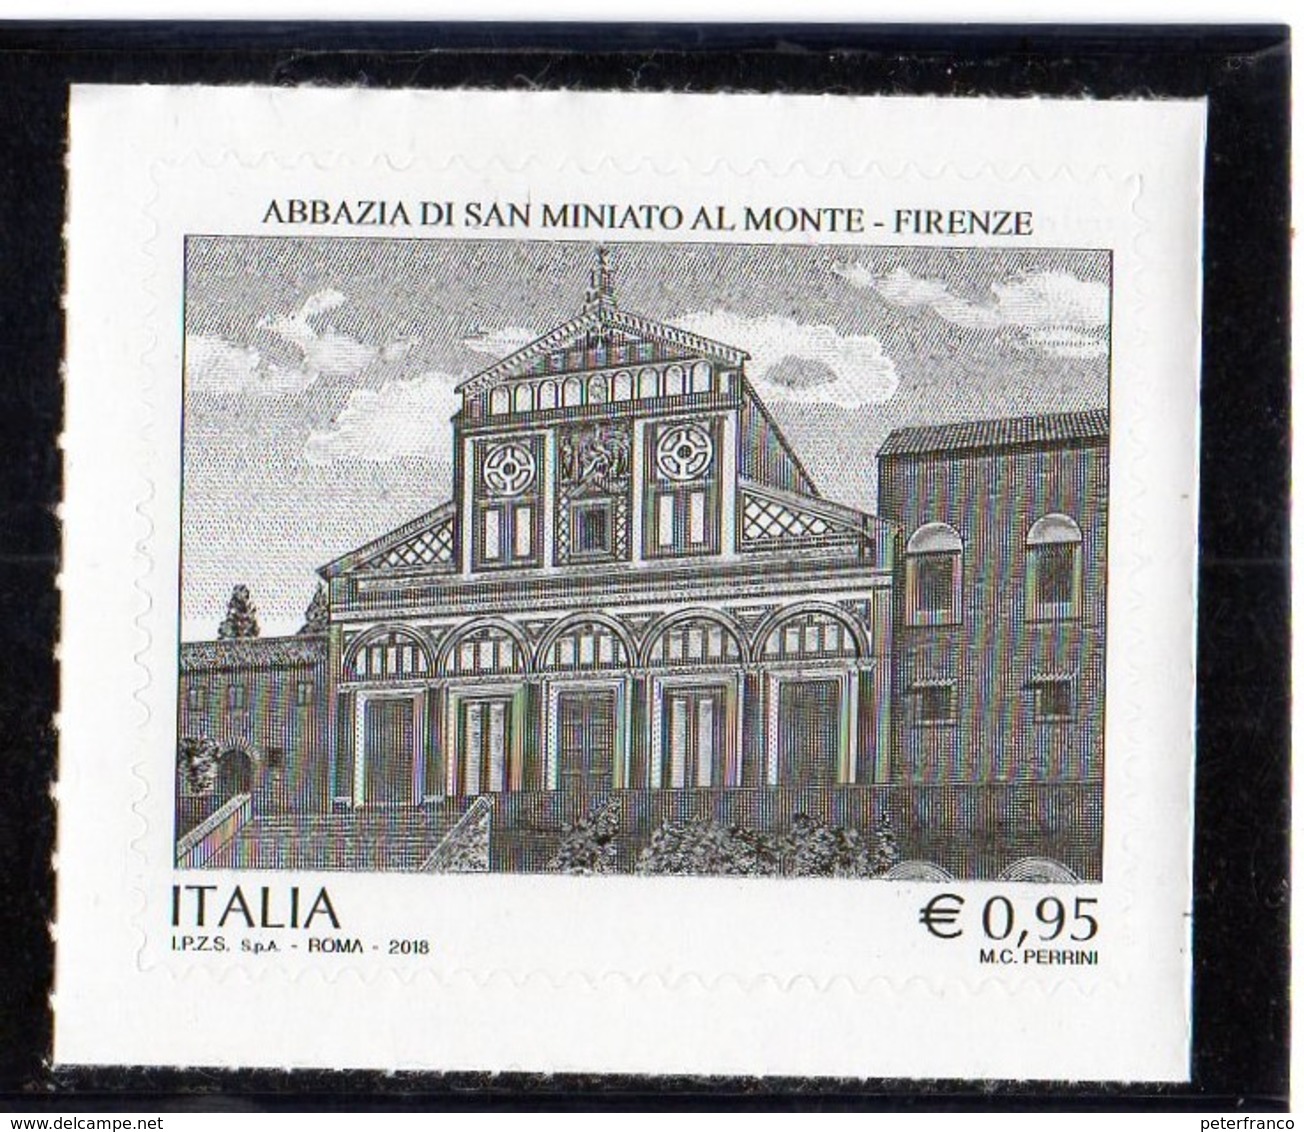 2018 Italia - Abbazia Di San Miniato Al Monte - Firenze - 2011-20: Mint/hinged